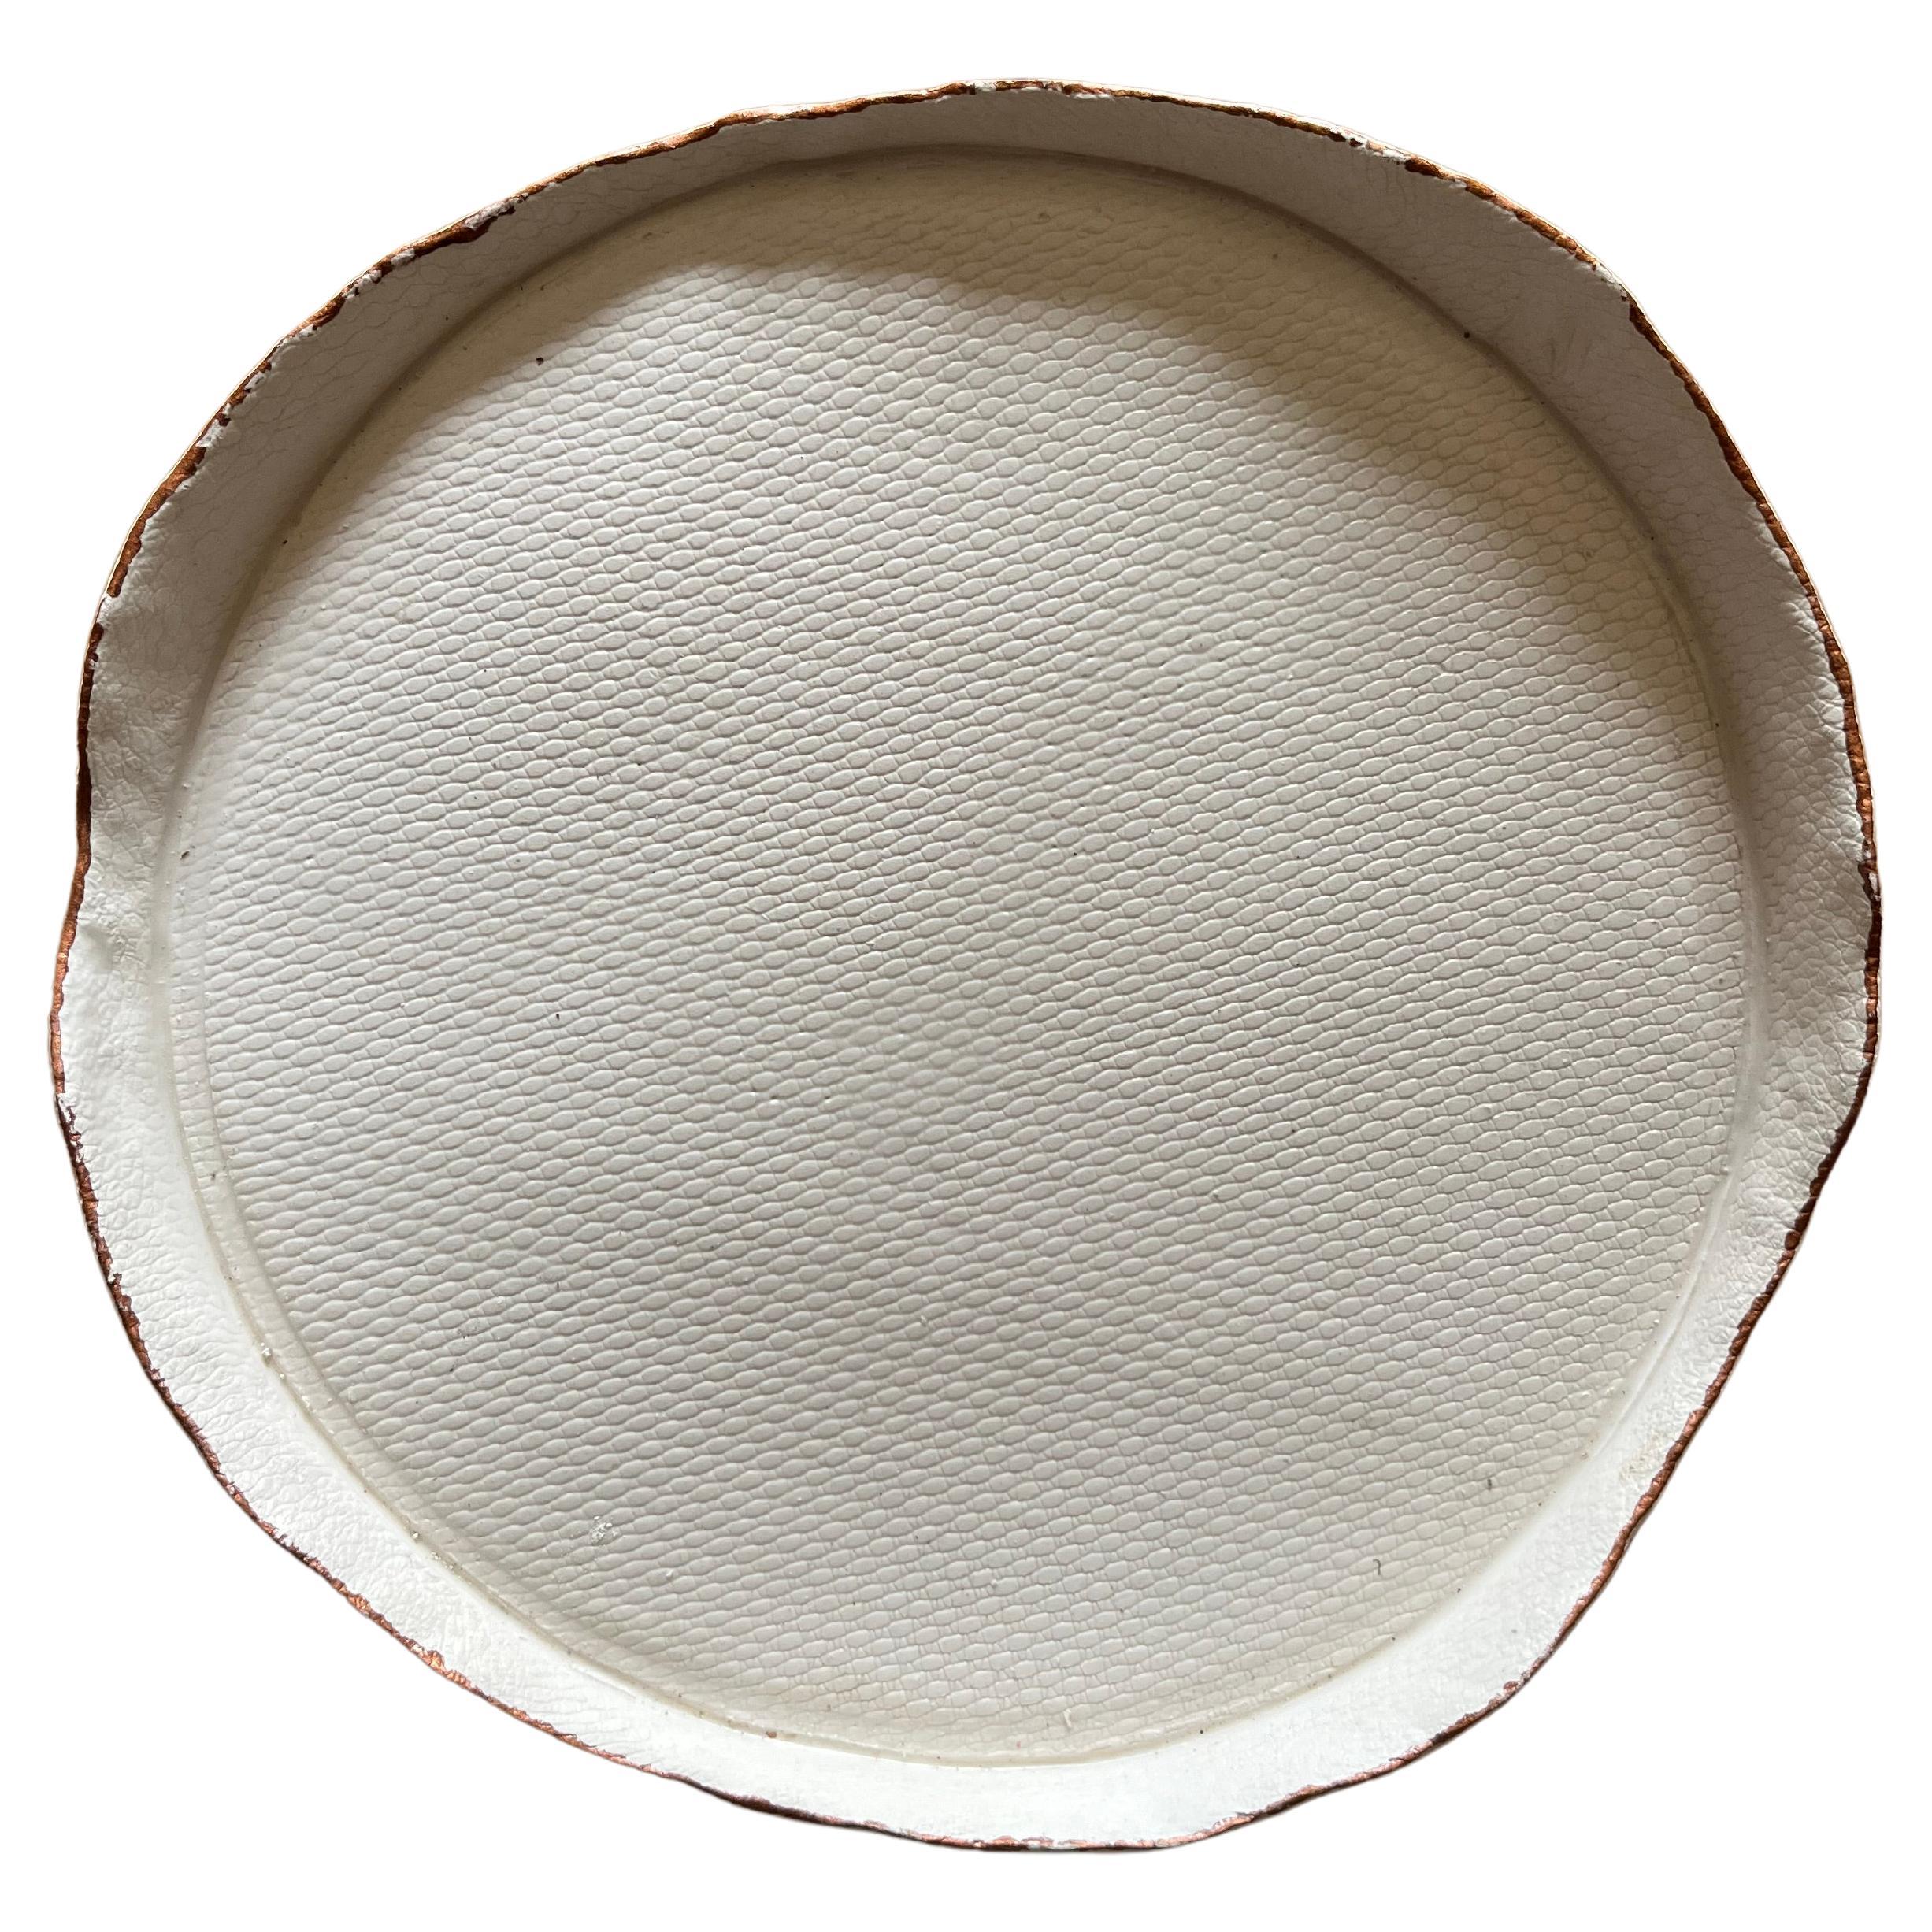 TESSUTI/Piatti decorativi in ceramica bianca opaca ispirati ai tessuti d'arredo. For Sale